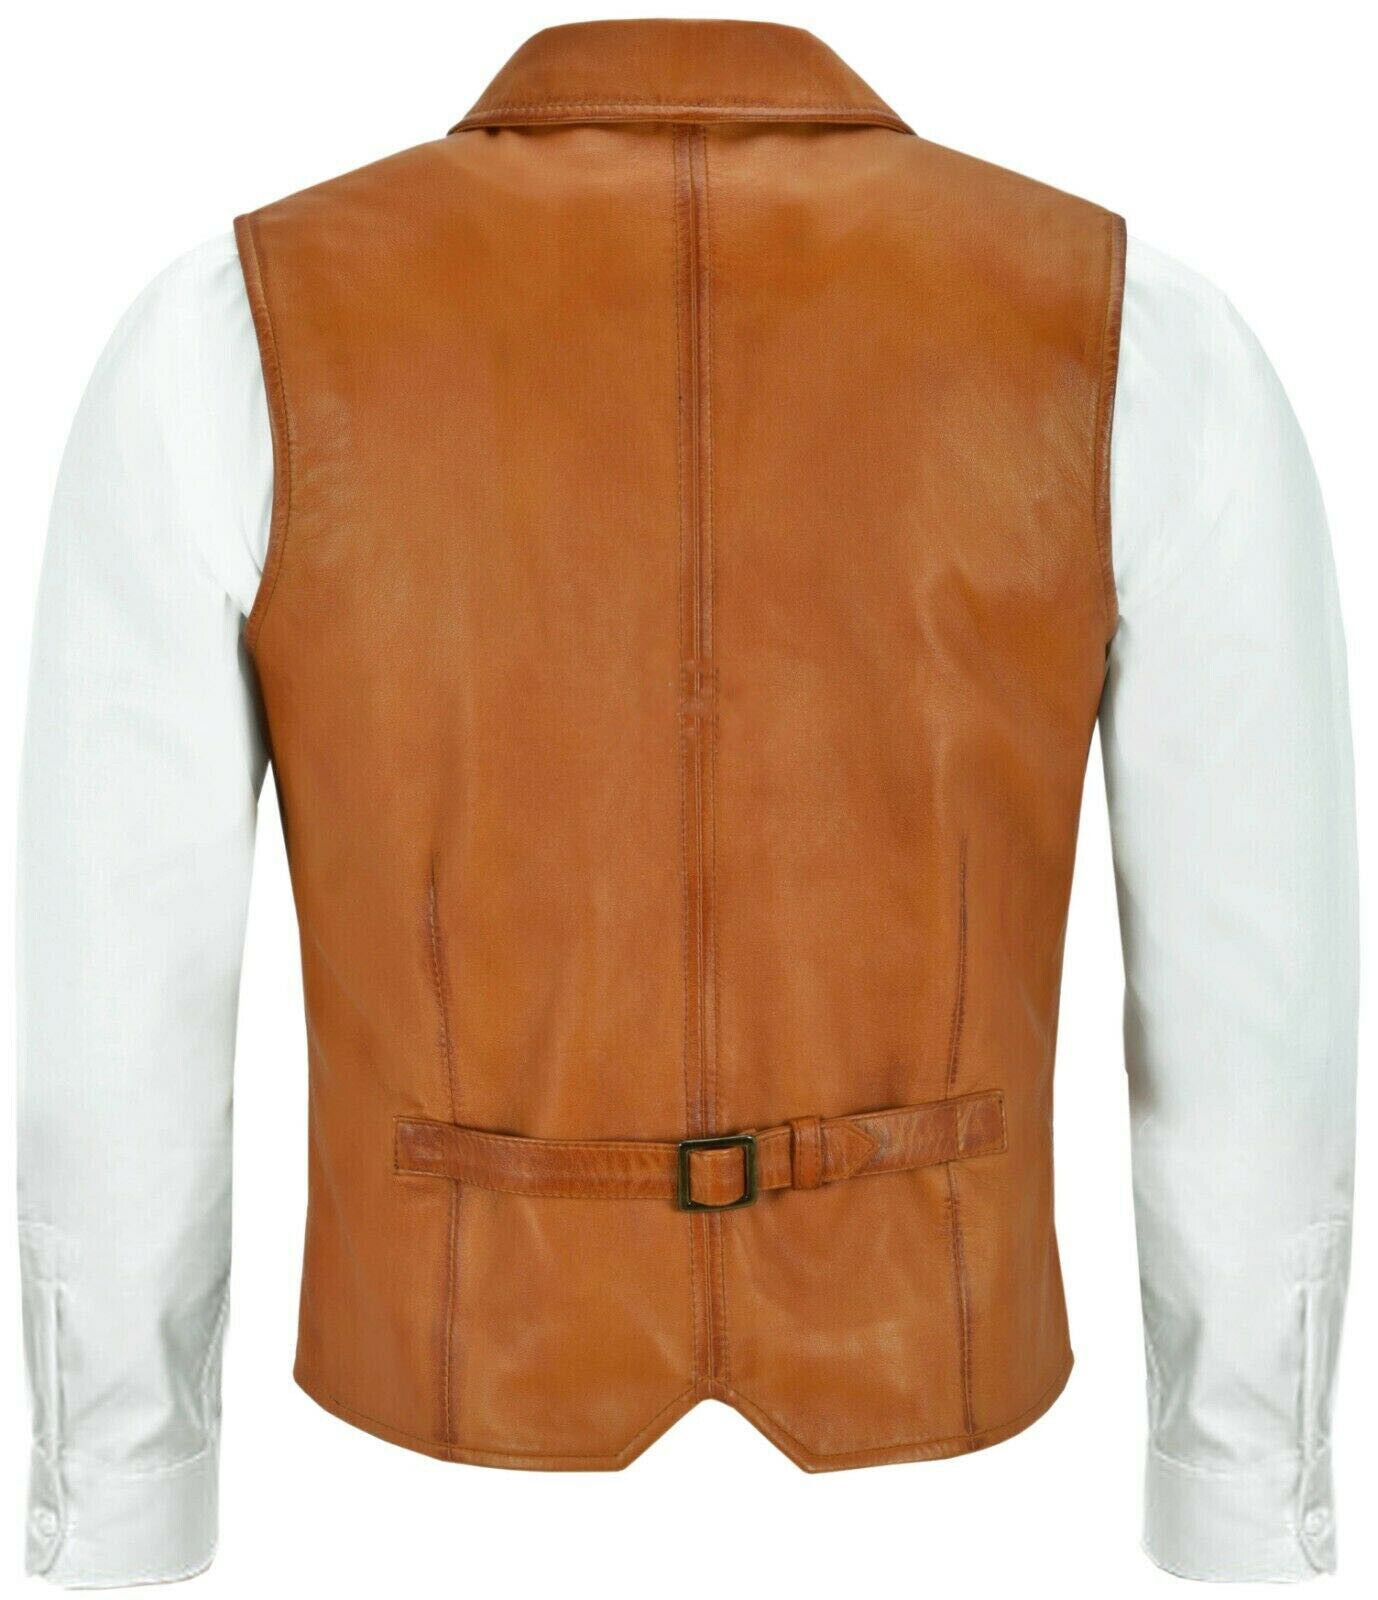 Genuine Brown Leather Bikers Vest